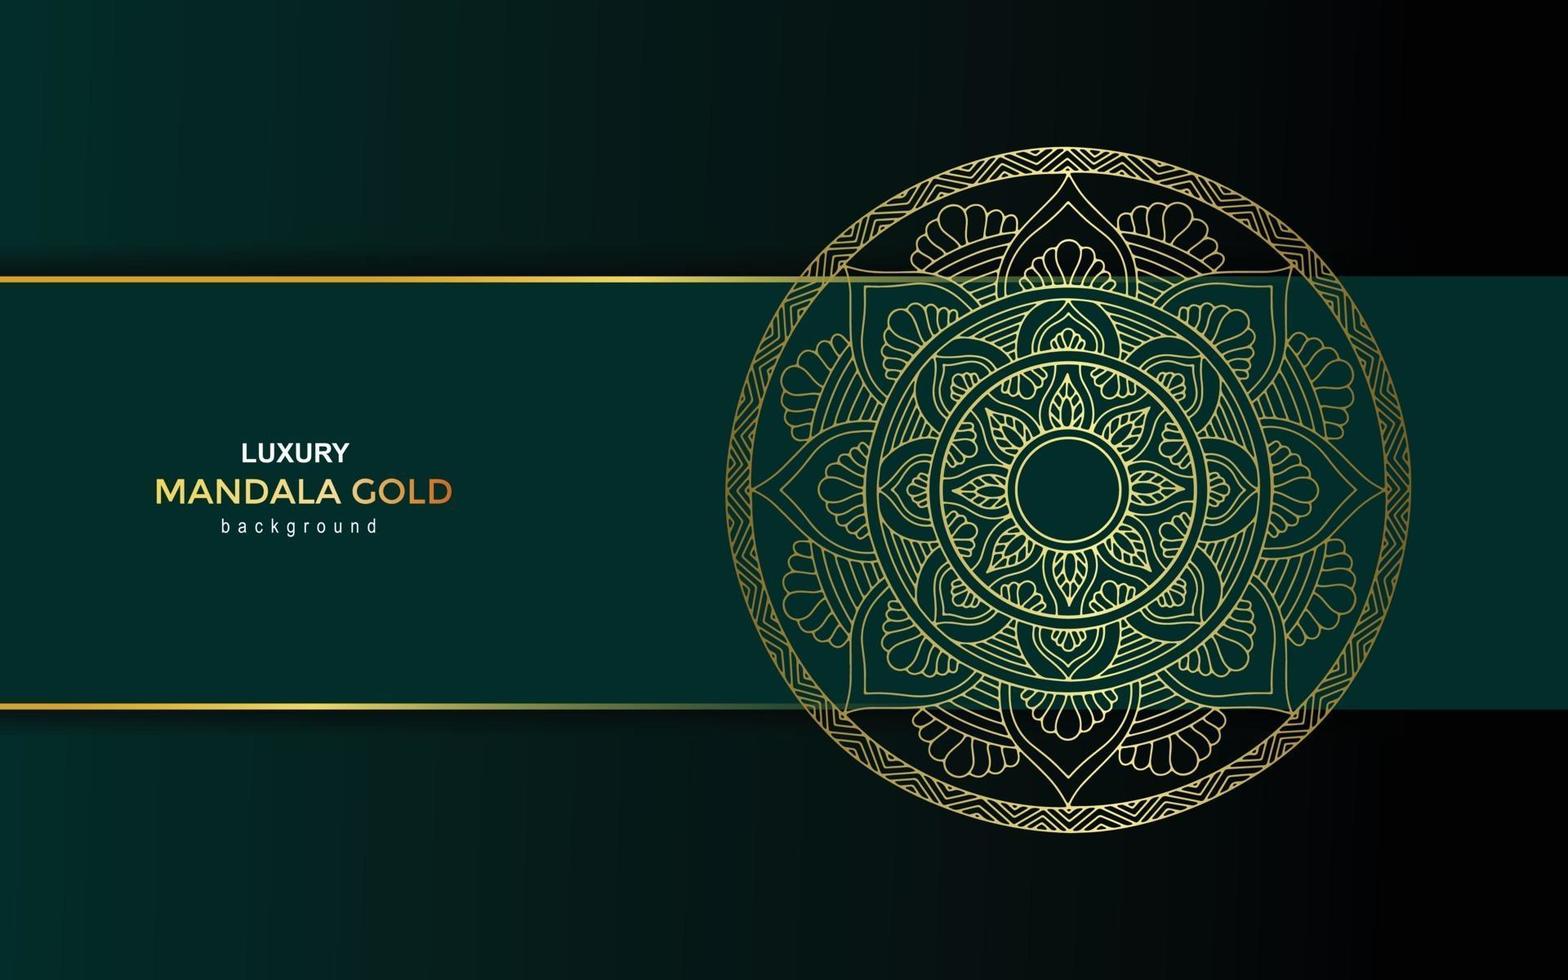 Luxury gold mandala ornate background vector